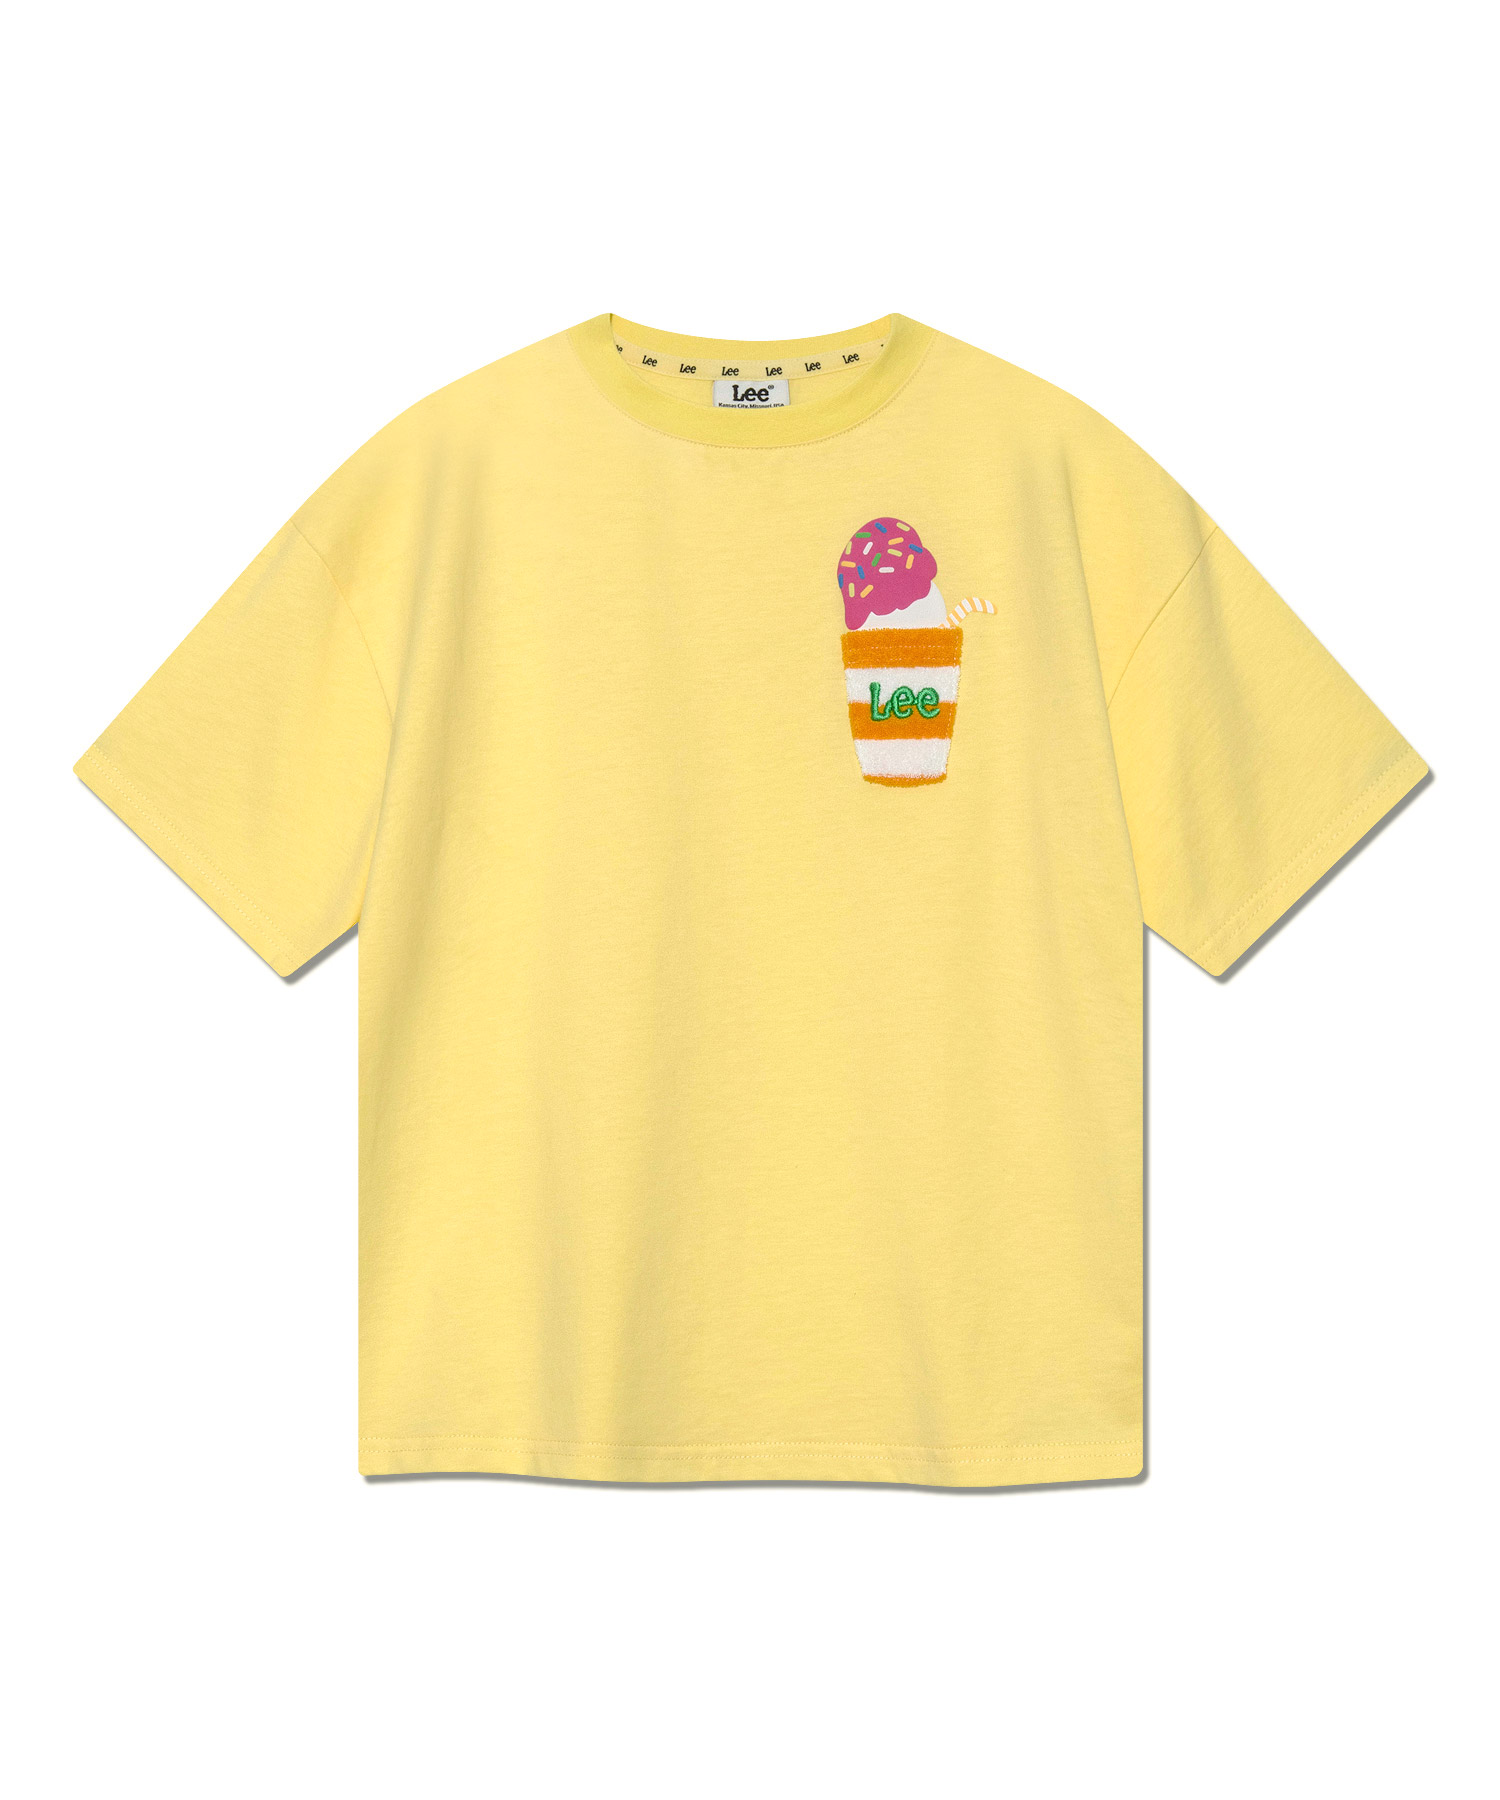 LEE 키즈 아이스크림 그래픽 반팔 티셔츠 옐로우